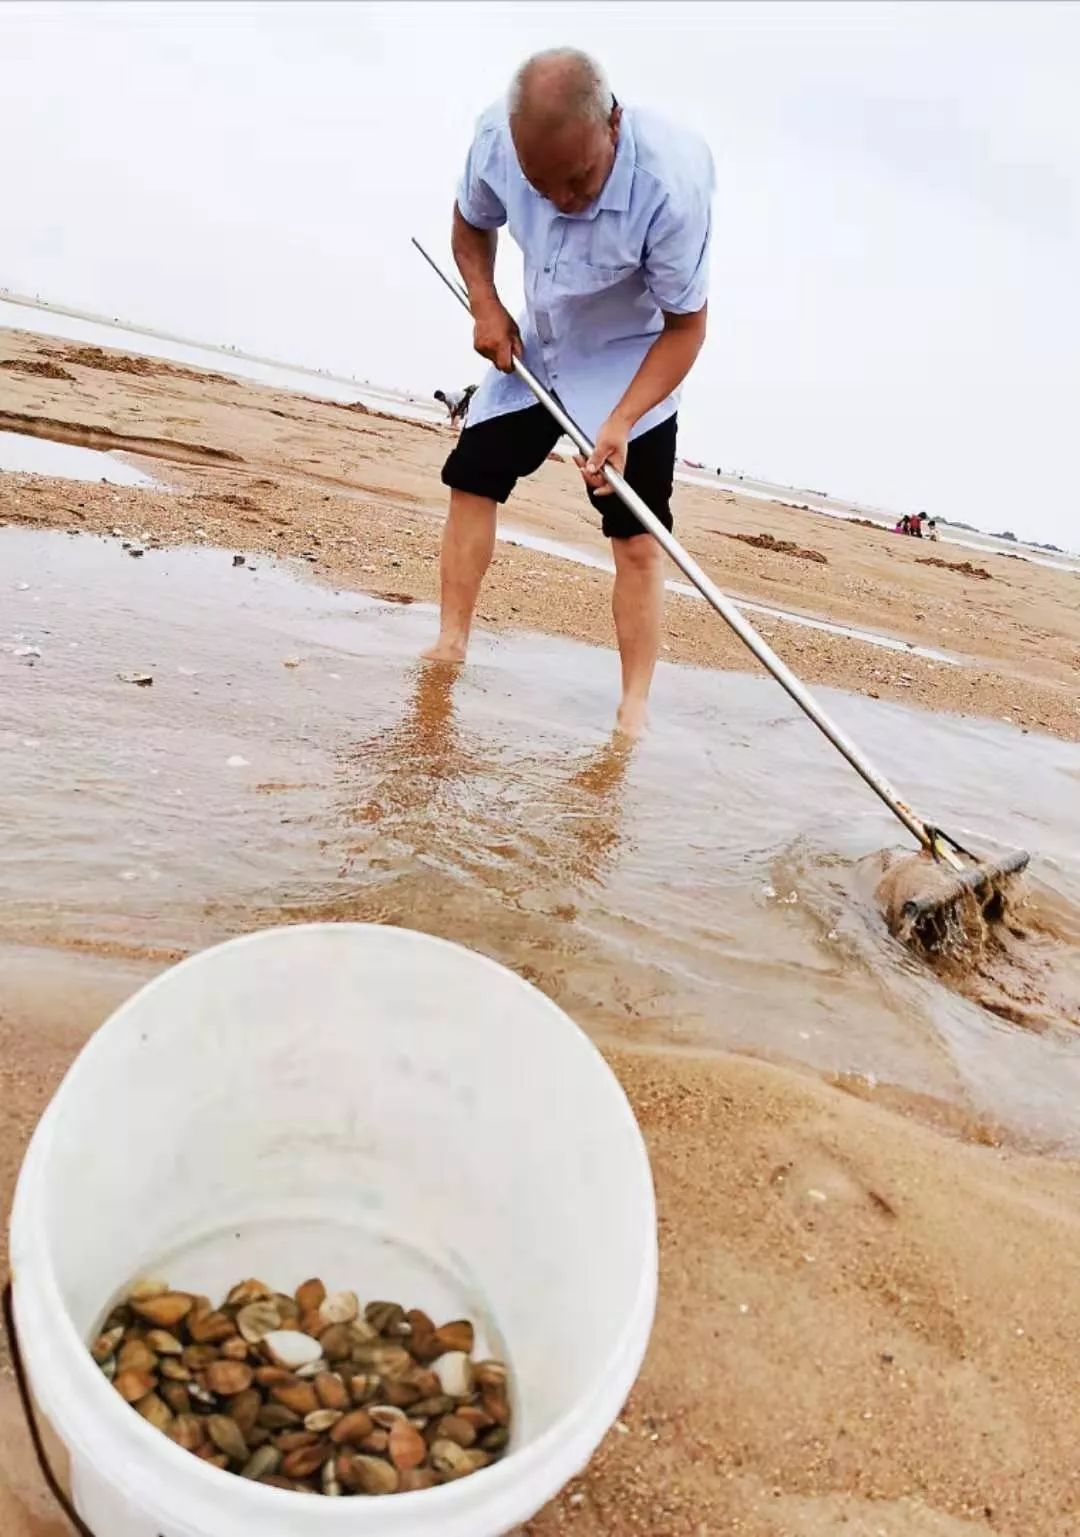 青岛人挖蛤蜊放大招了:耙子,漏盘都用上了